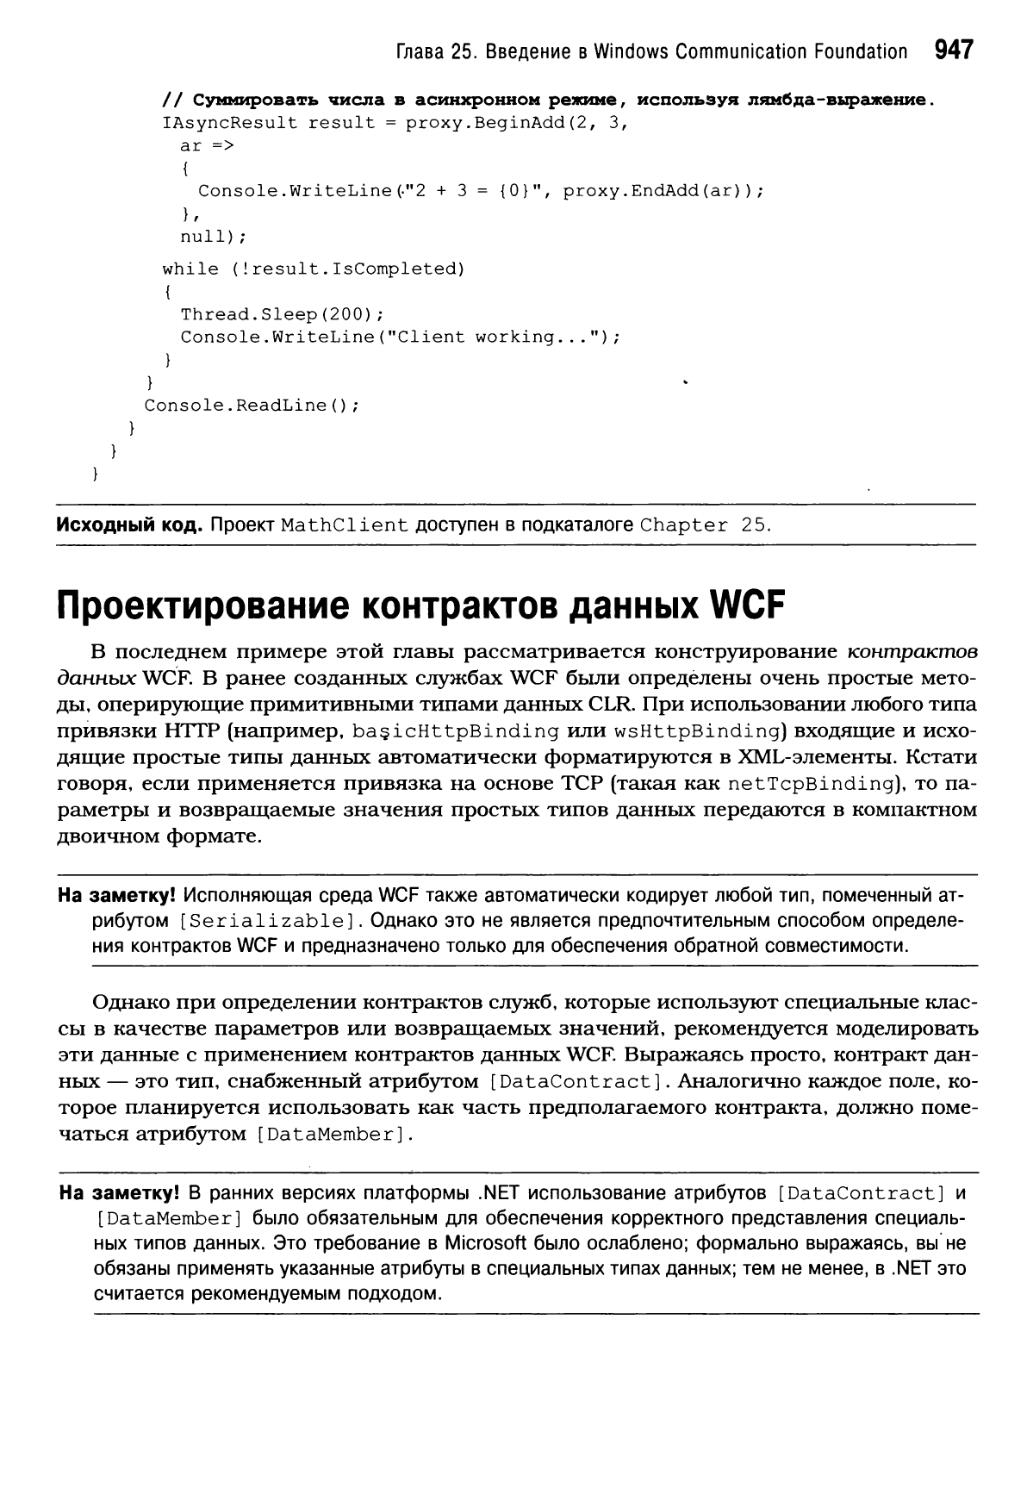 Проектирование контрактов данных WCF